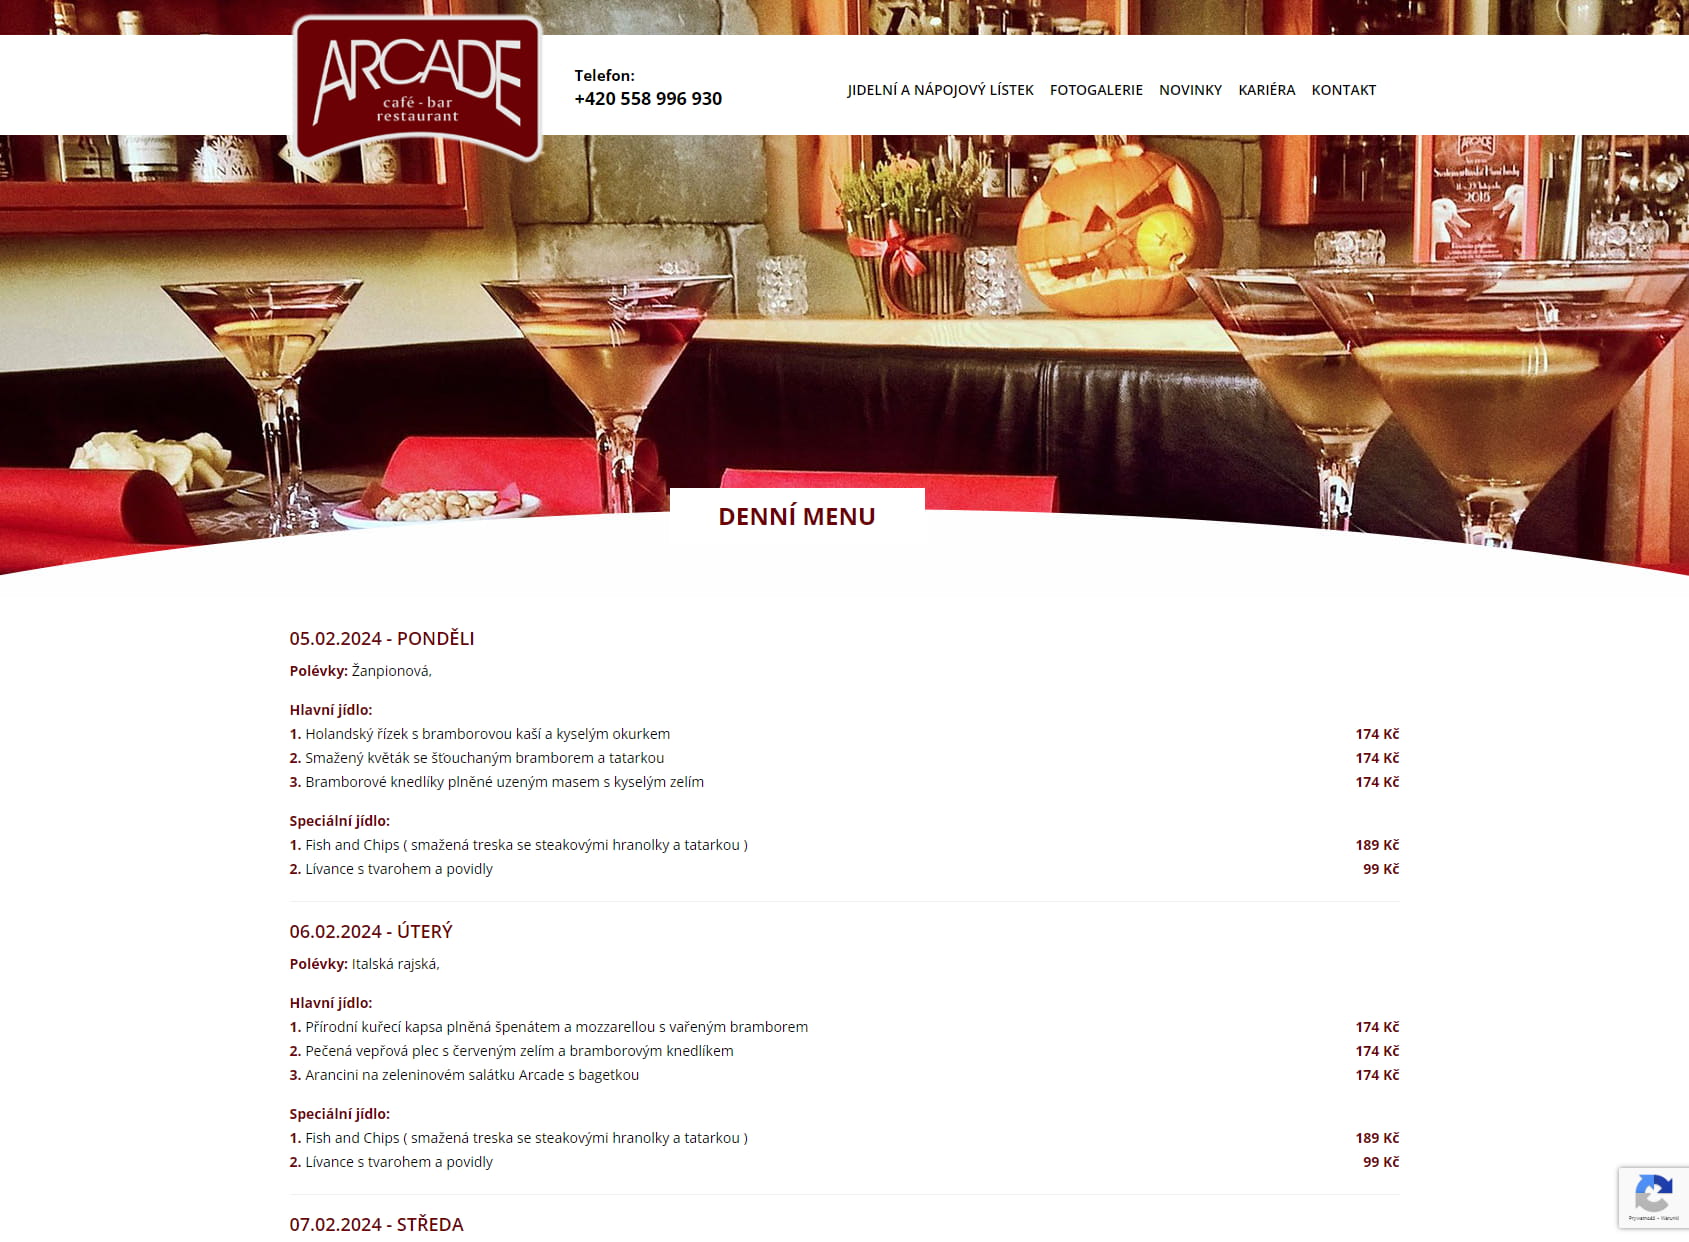 Café bar - restaurant ARCADE